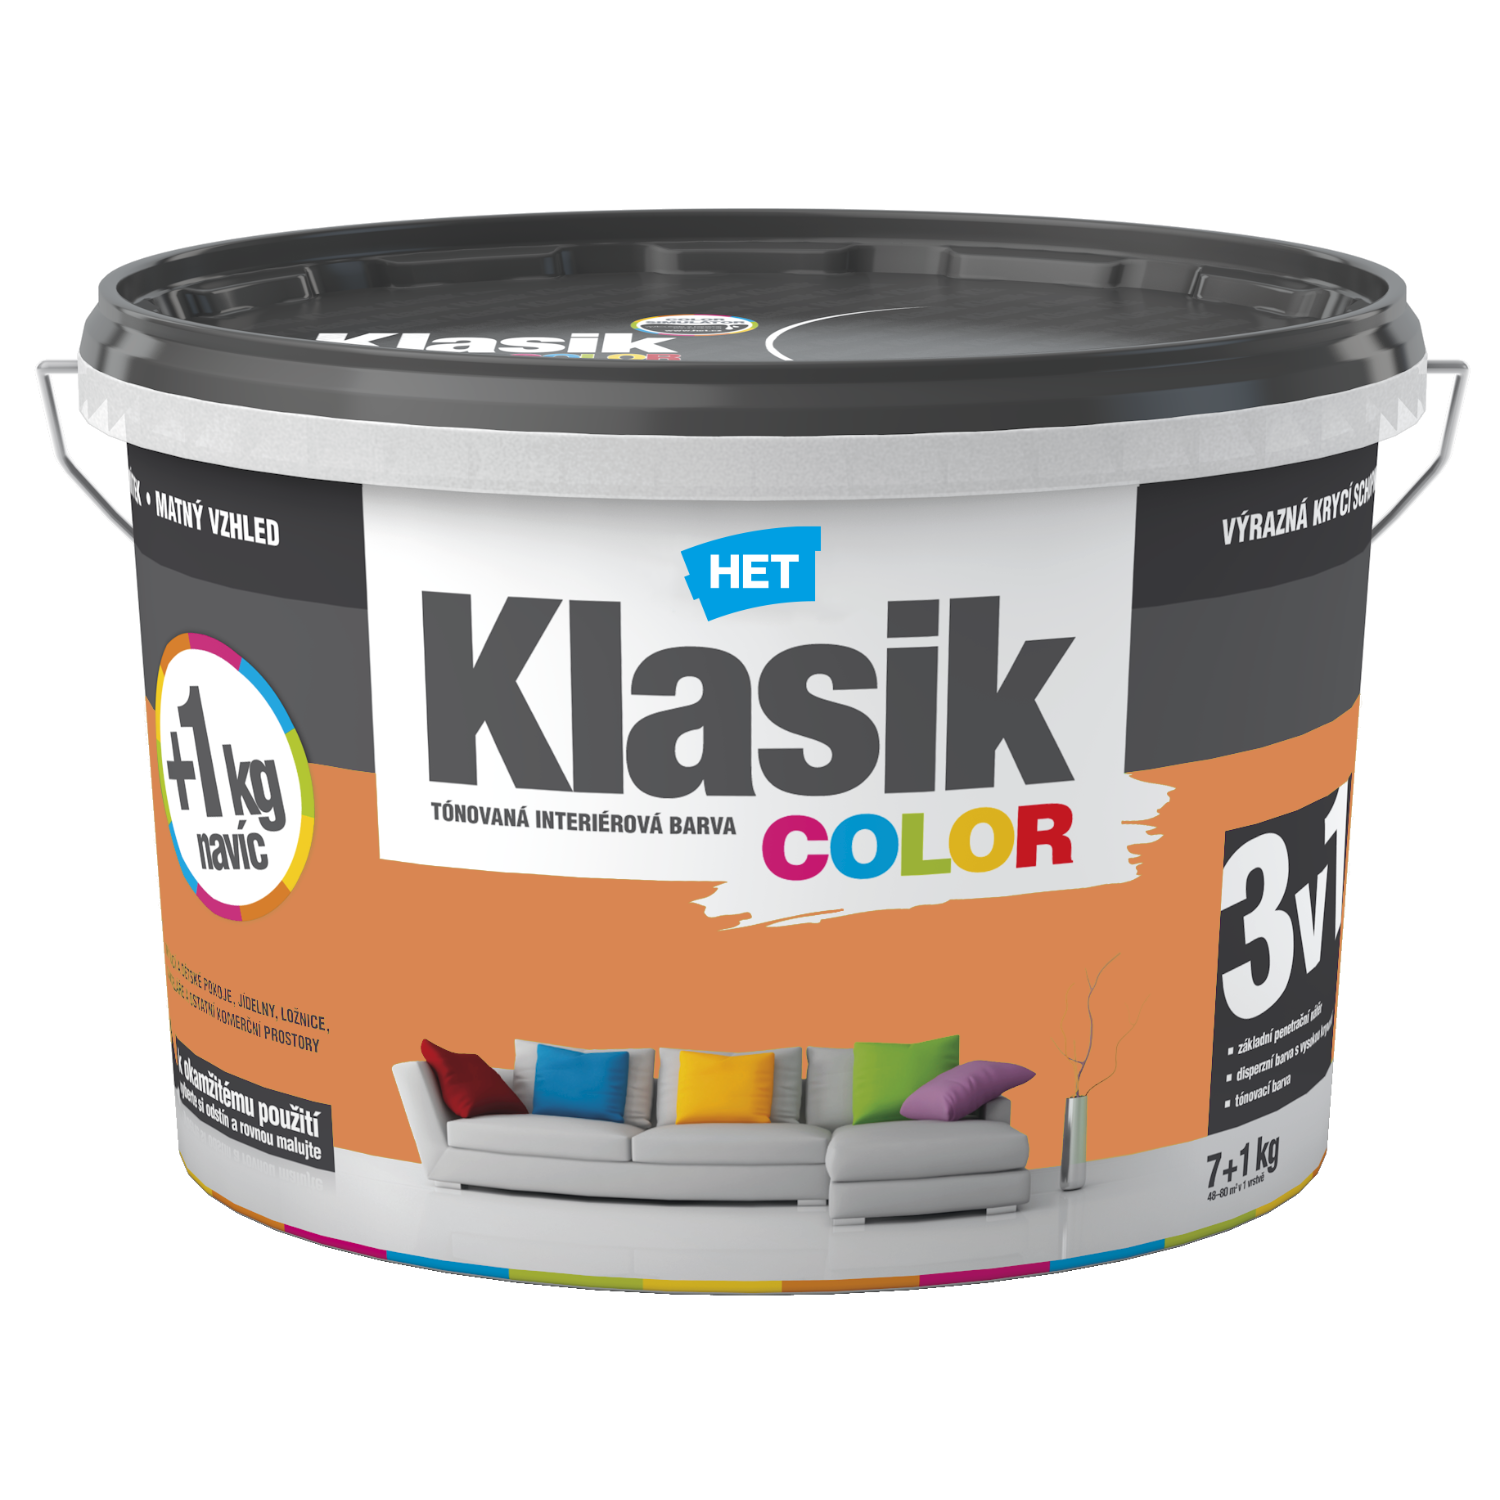 HET Klasik COLOR tónovaná interiérová akrylátová disperzná oteruvzdorná farba 7 kg + 1 kg zdarma, KC0728 - oranžový broskyňový